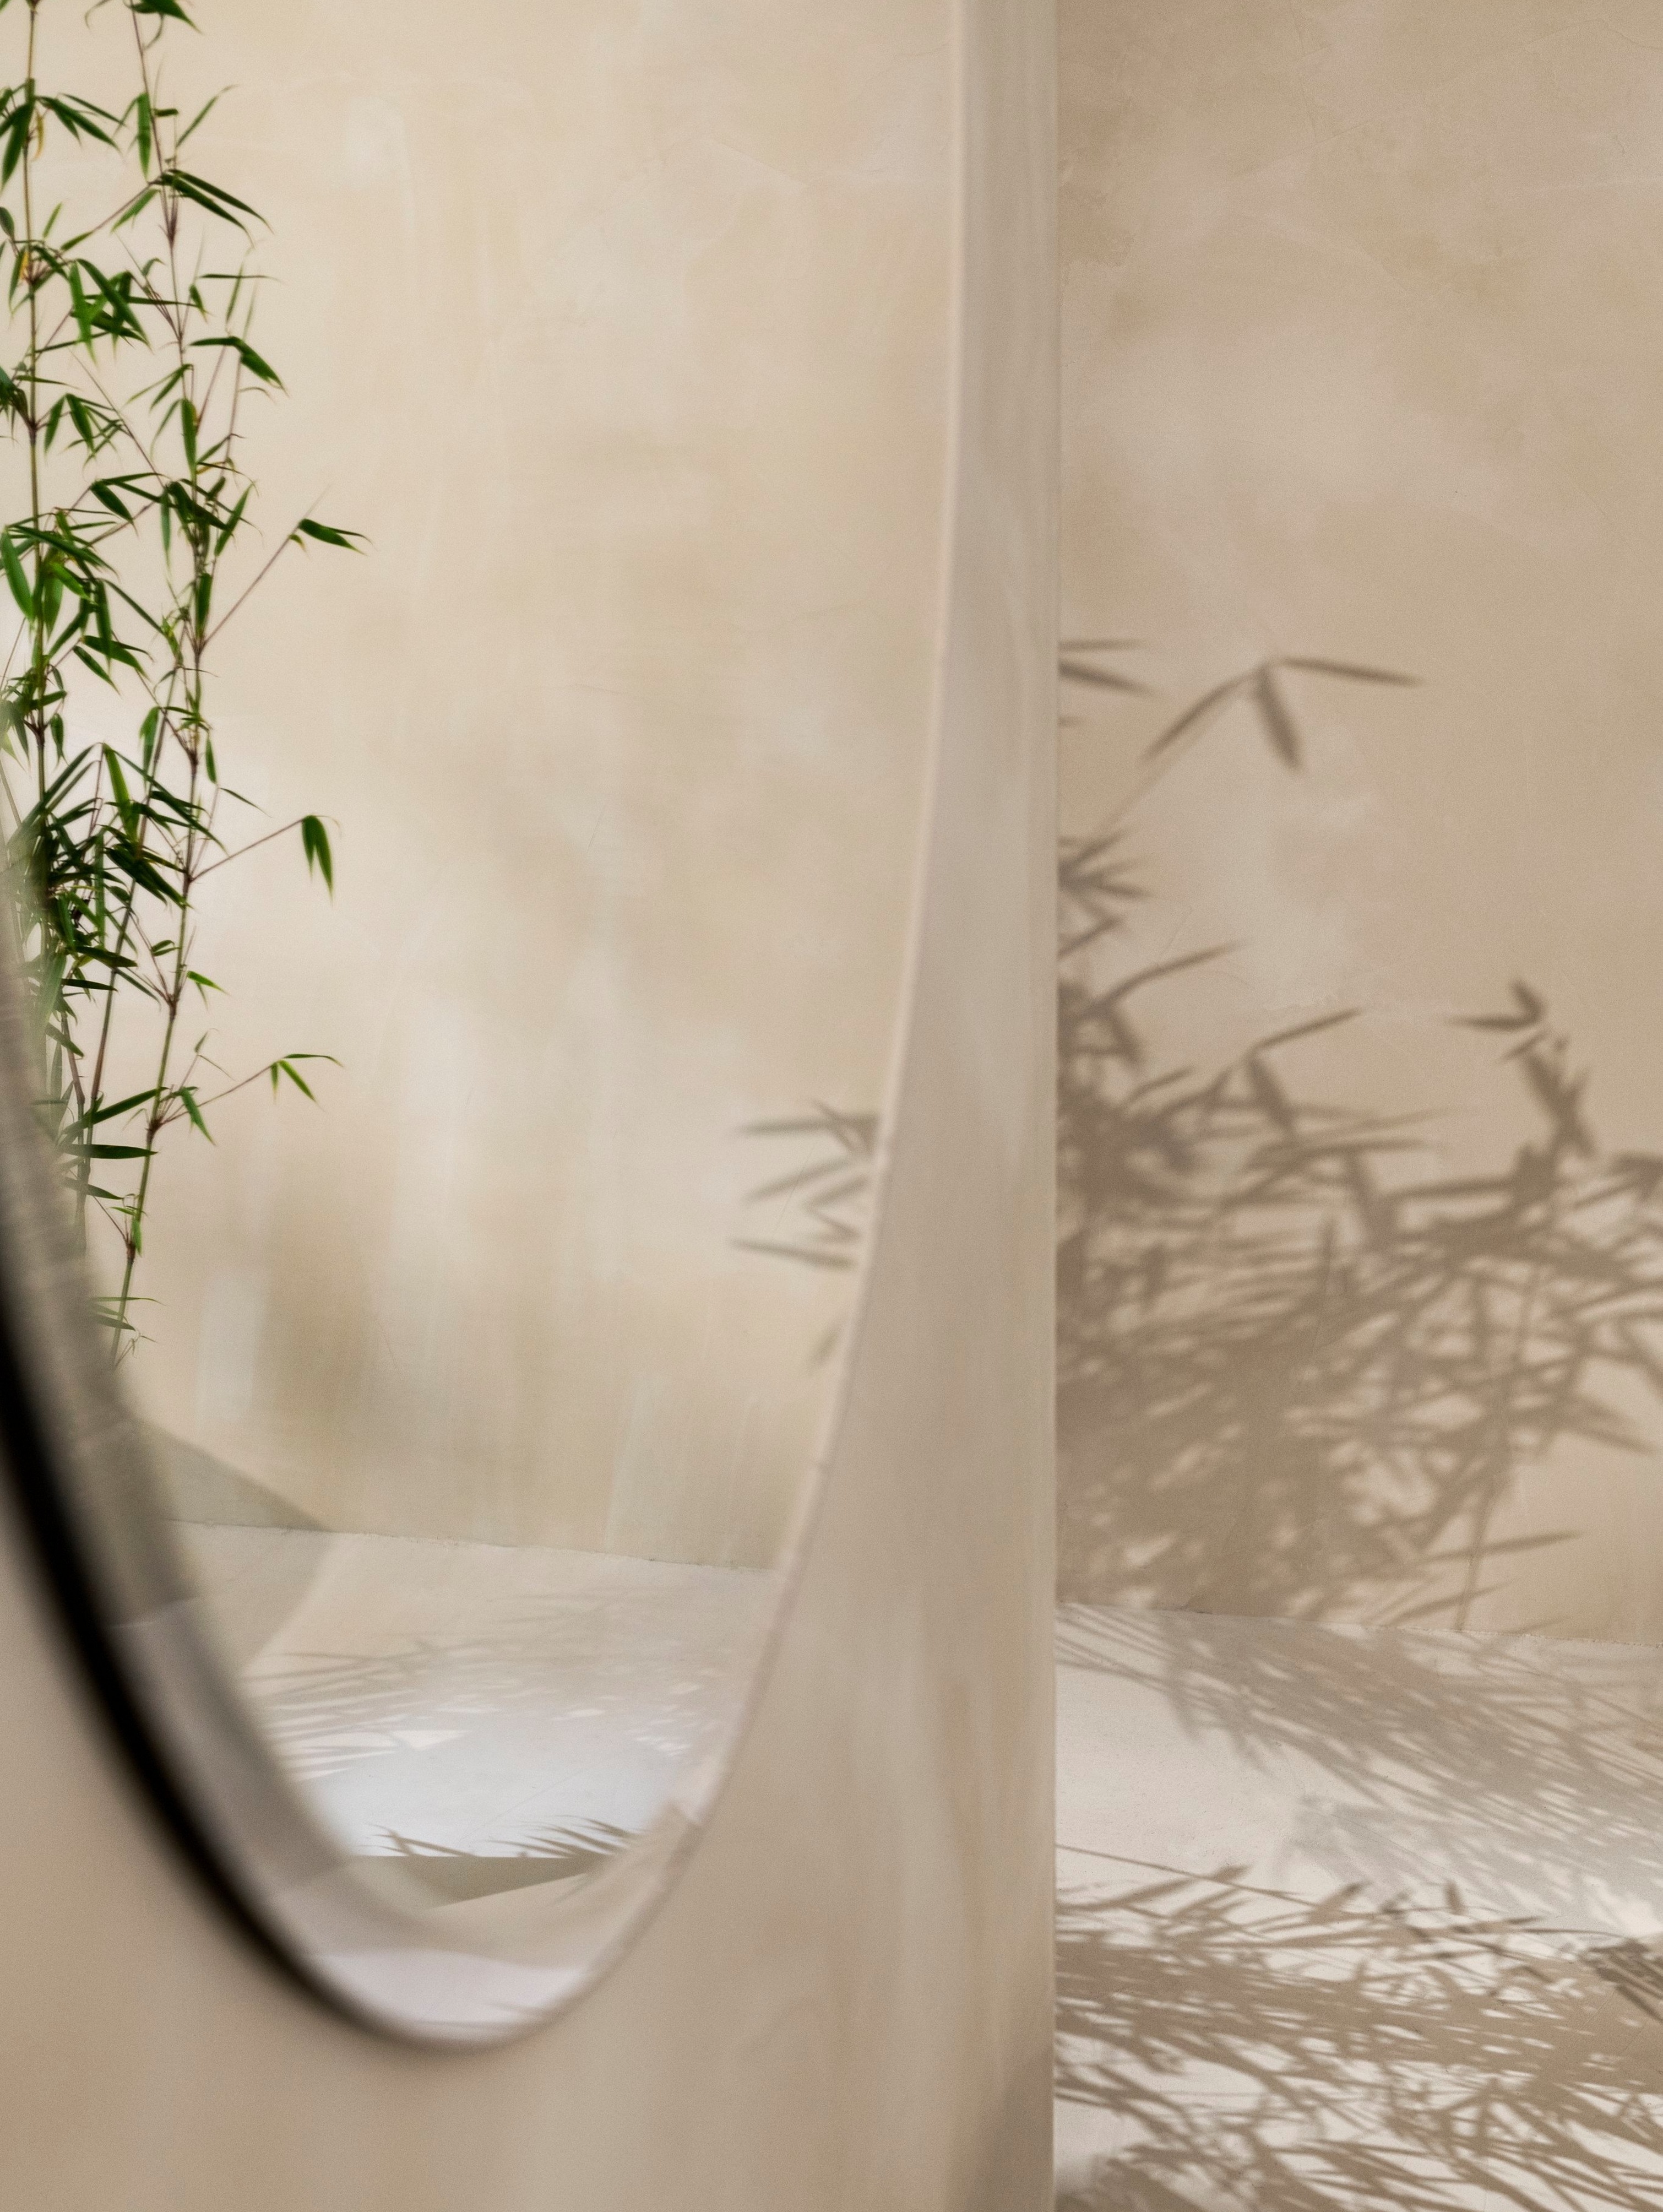 壁に掛けられた円形のTone ミラーに植物が映っている。